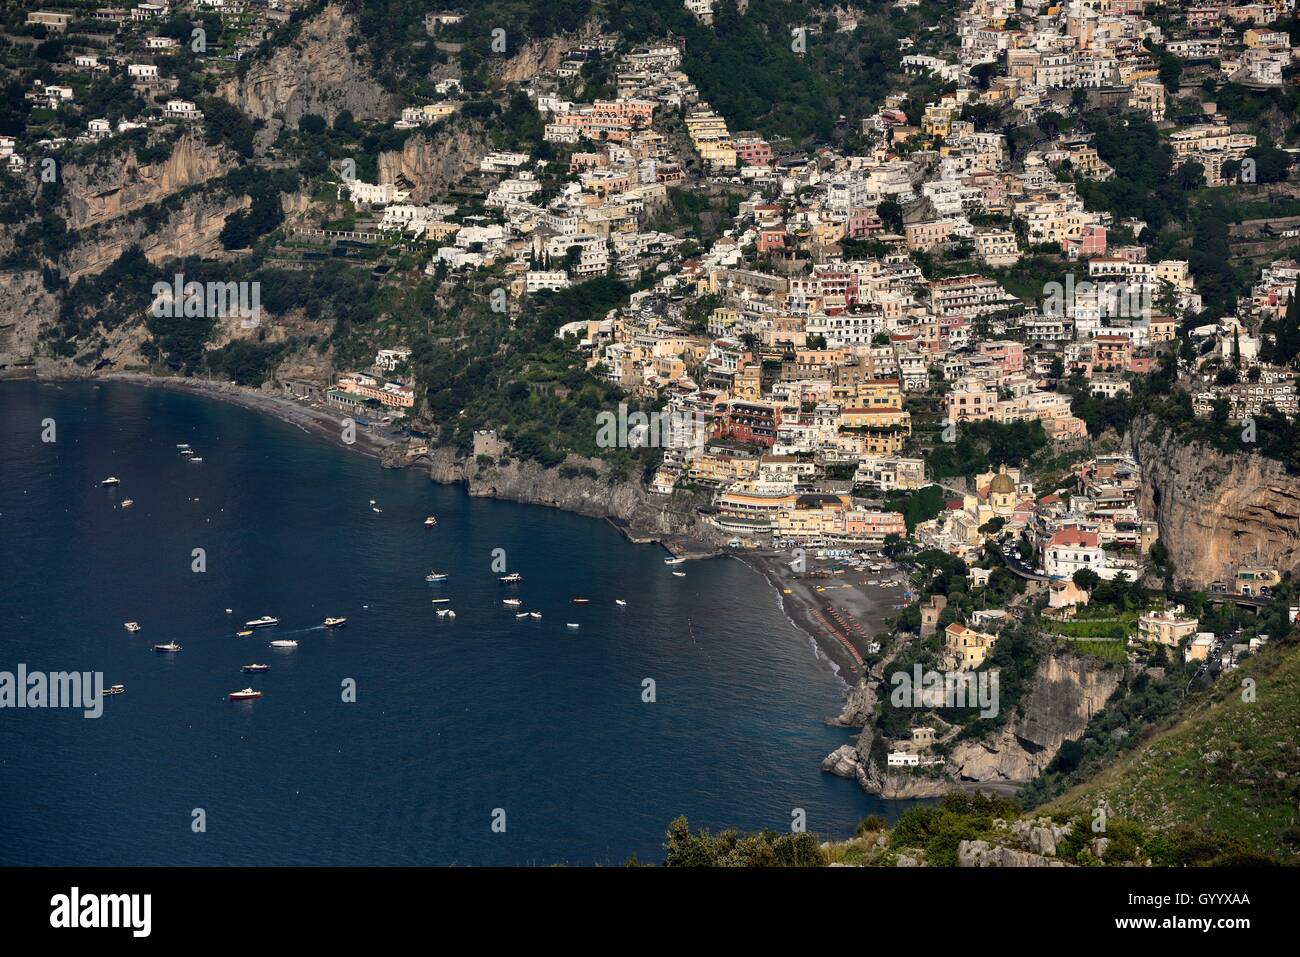 Vista del pueblo de Positano, Amalfi, Costiera Amalfitana, provincia de Salerno, Región de Campania, Italia Foto de stock